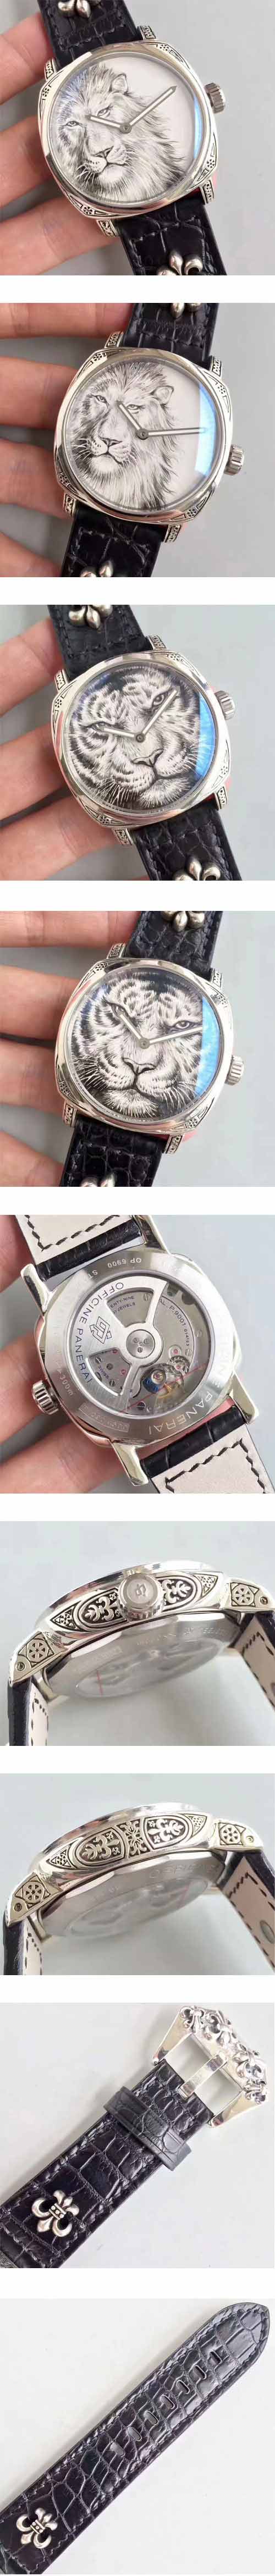 パネライ P.9001 自動巻き腕時計は価格性能比が高いです